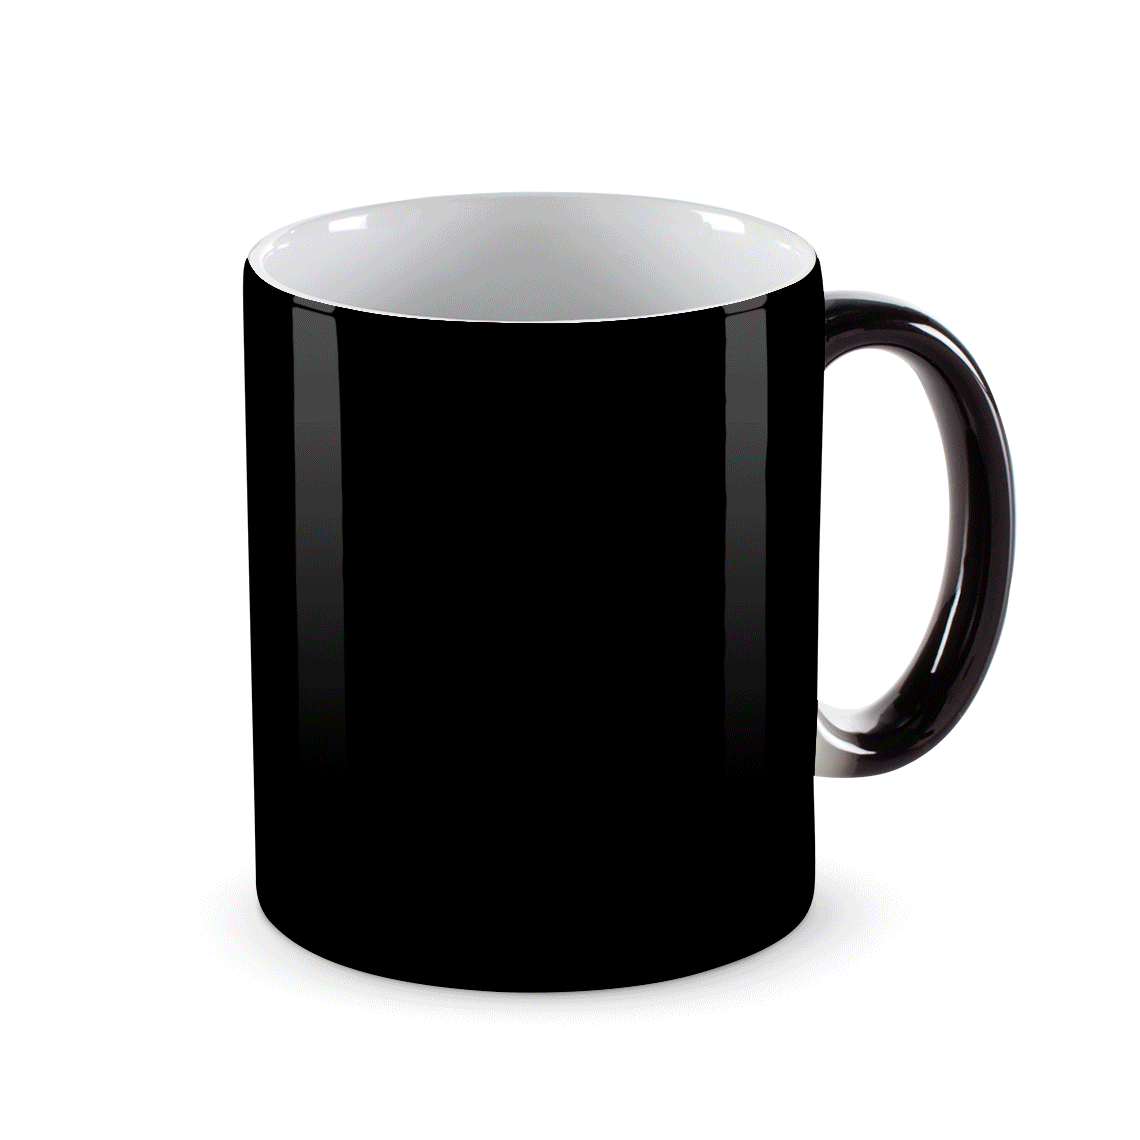 Customized Photo Magic Mug